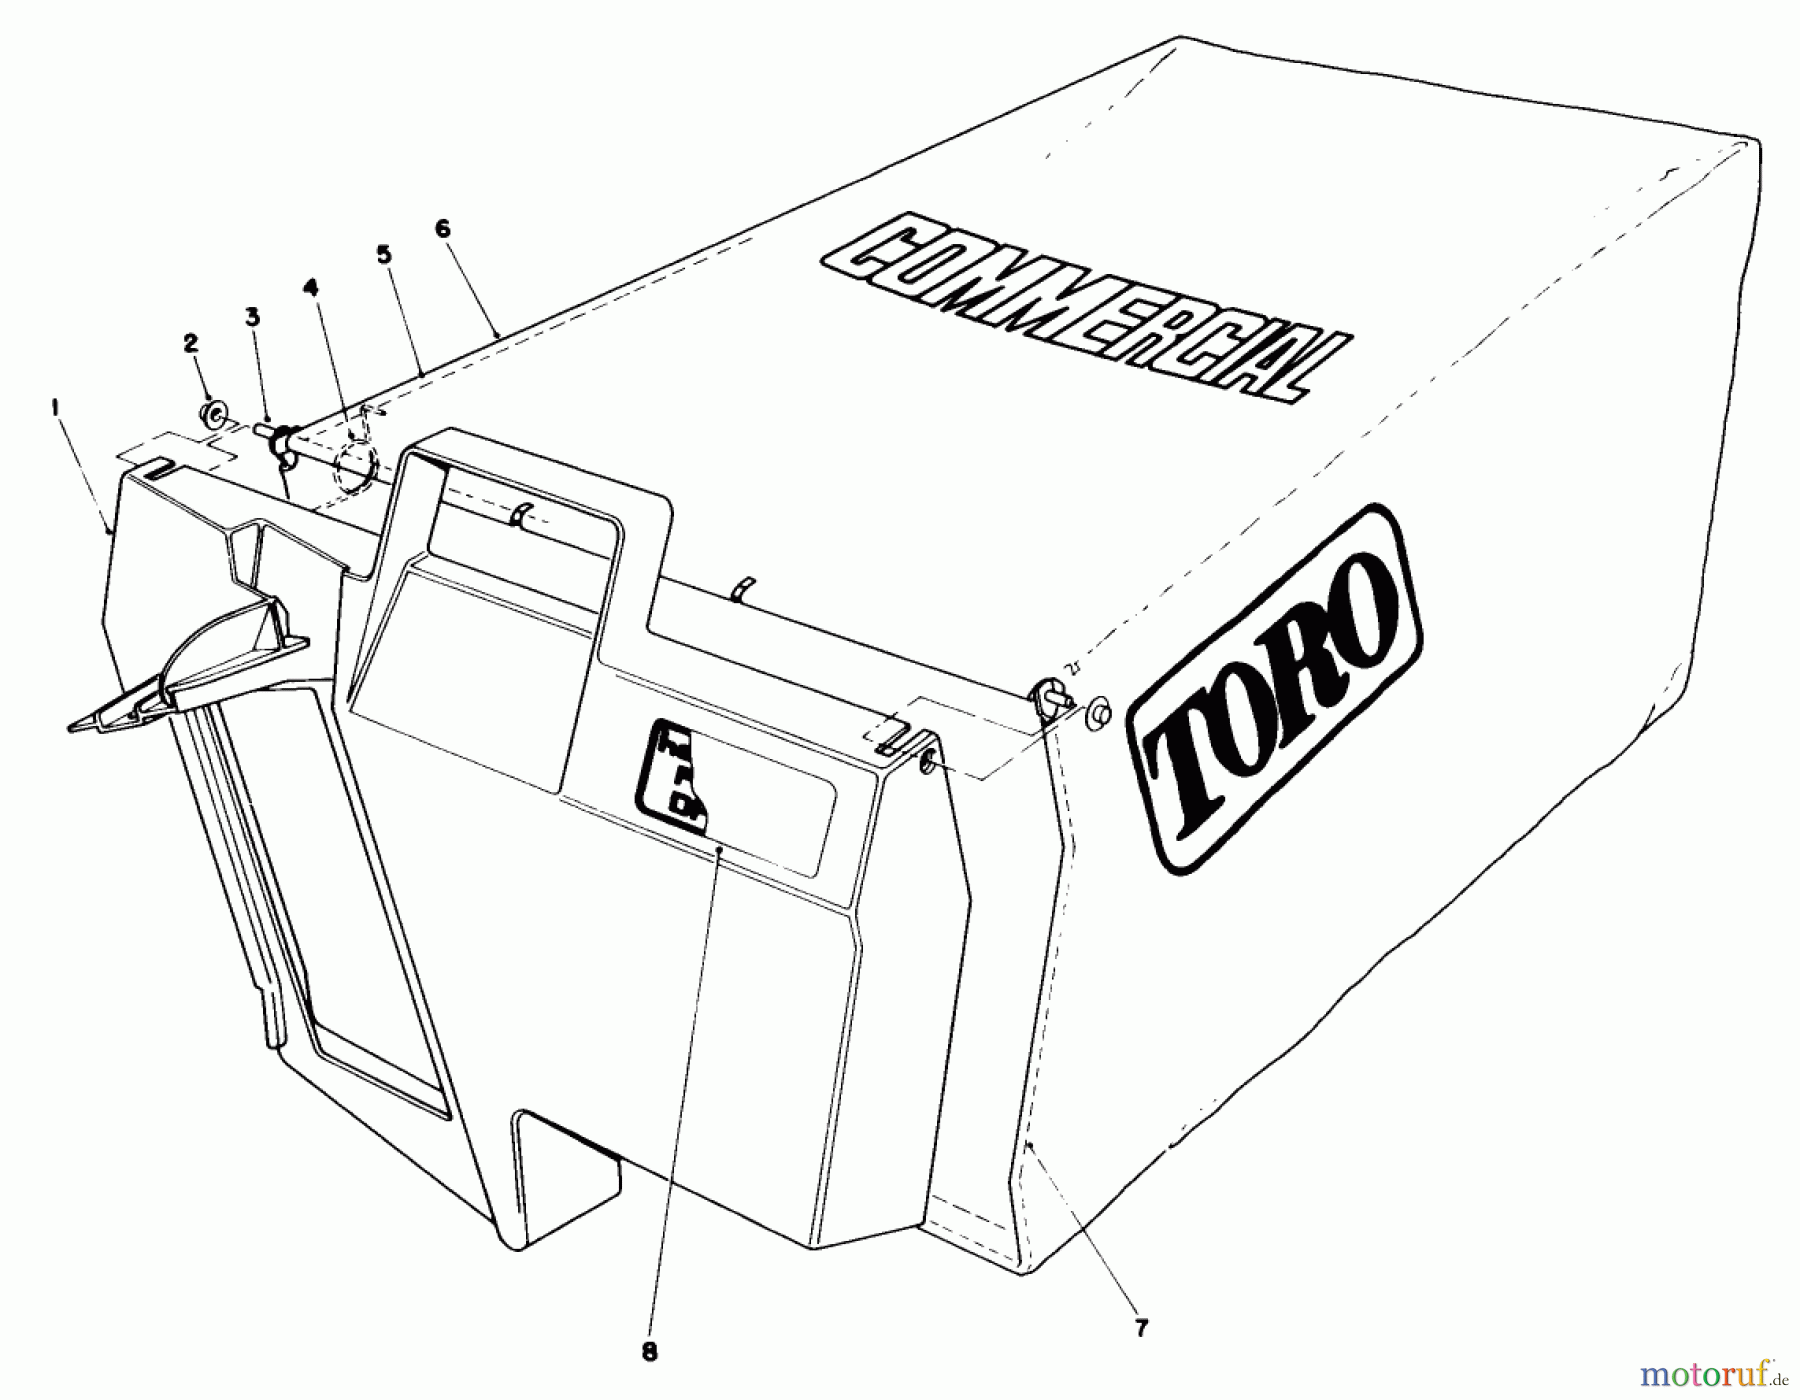  Toro Neu Mowers, Walk-Behind Seite 2 22030 - Toro Lawnmower, 1987 (7000001-7999999) GRASS BAG ASSEMBLY NO. 11-5609